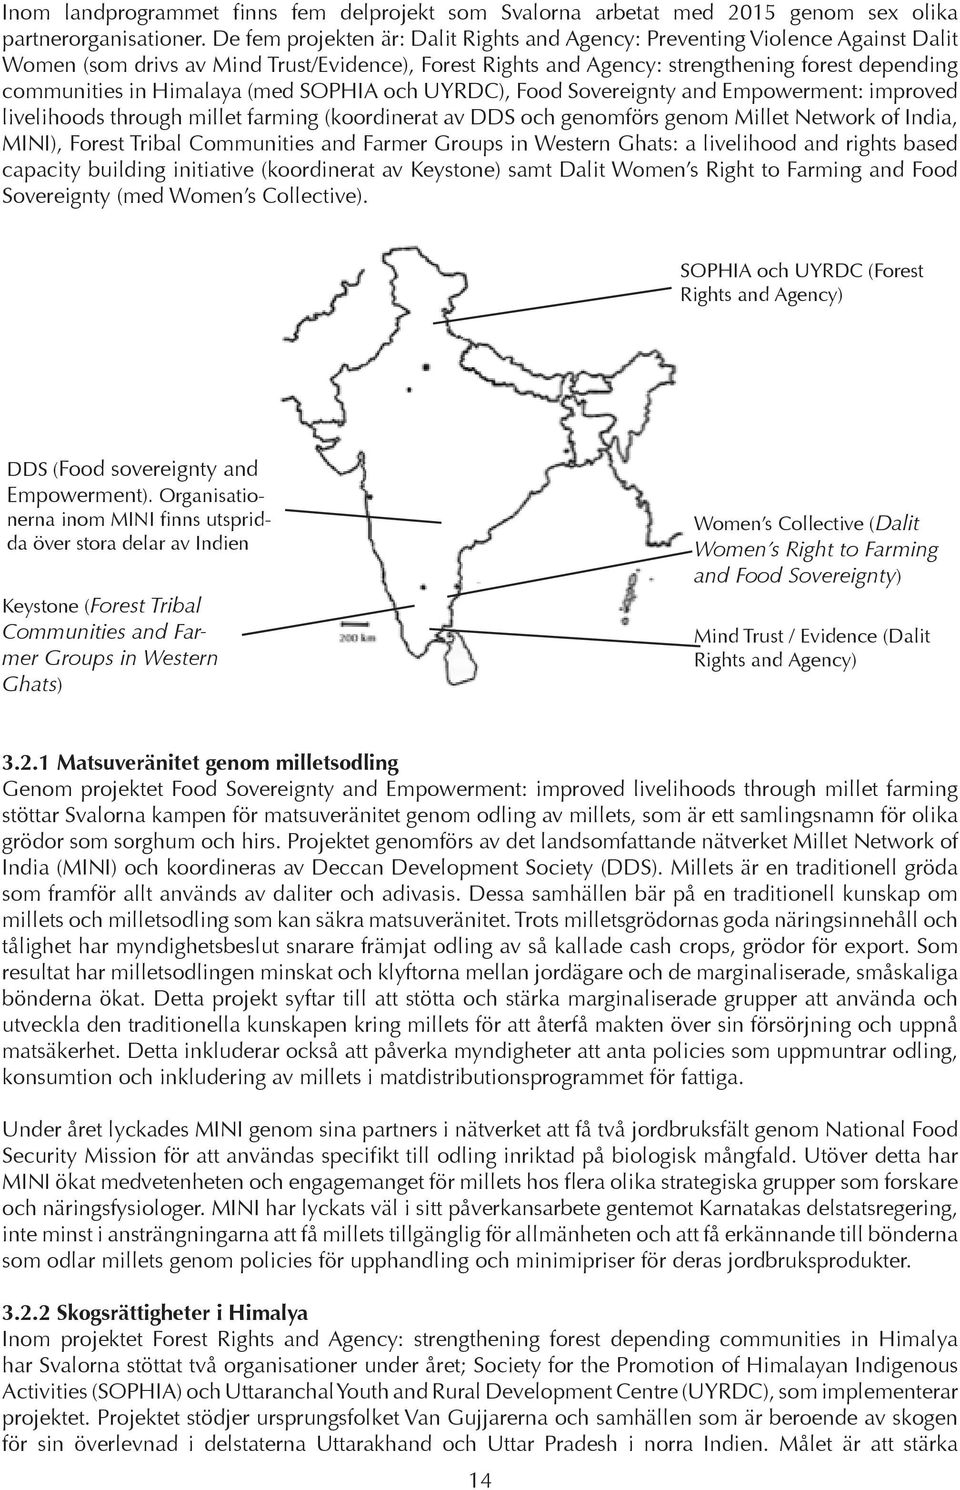 Himalaya (med SOPHIA och UYRDC), Food Sovereignty and Empowerment: improved livelihoods through millet farming (koordinerat av DDS och genomförs genom Millet Network of India, MINI), Forest Tribal